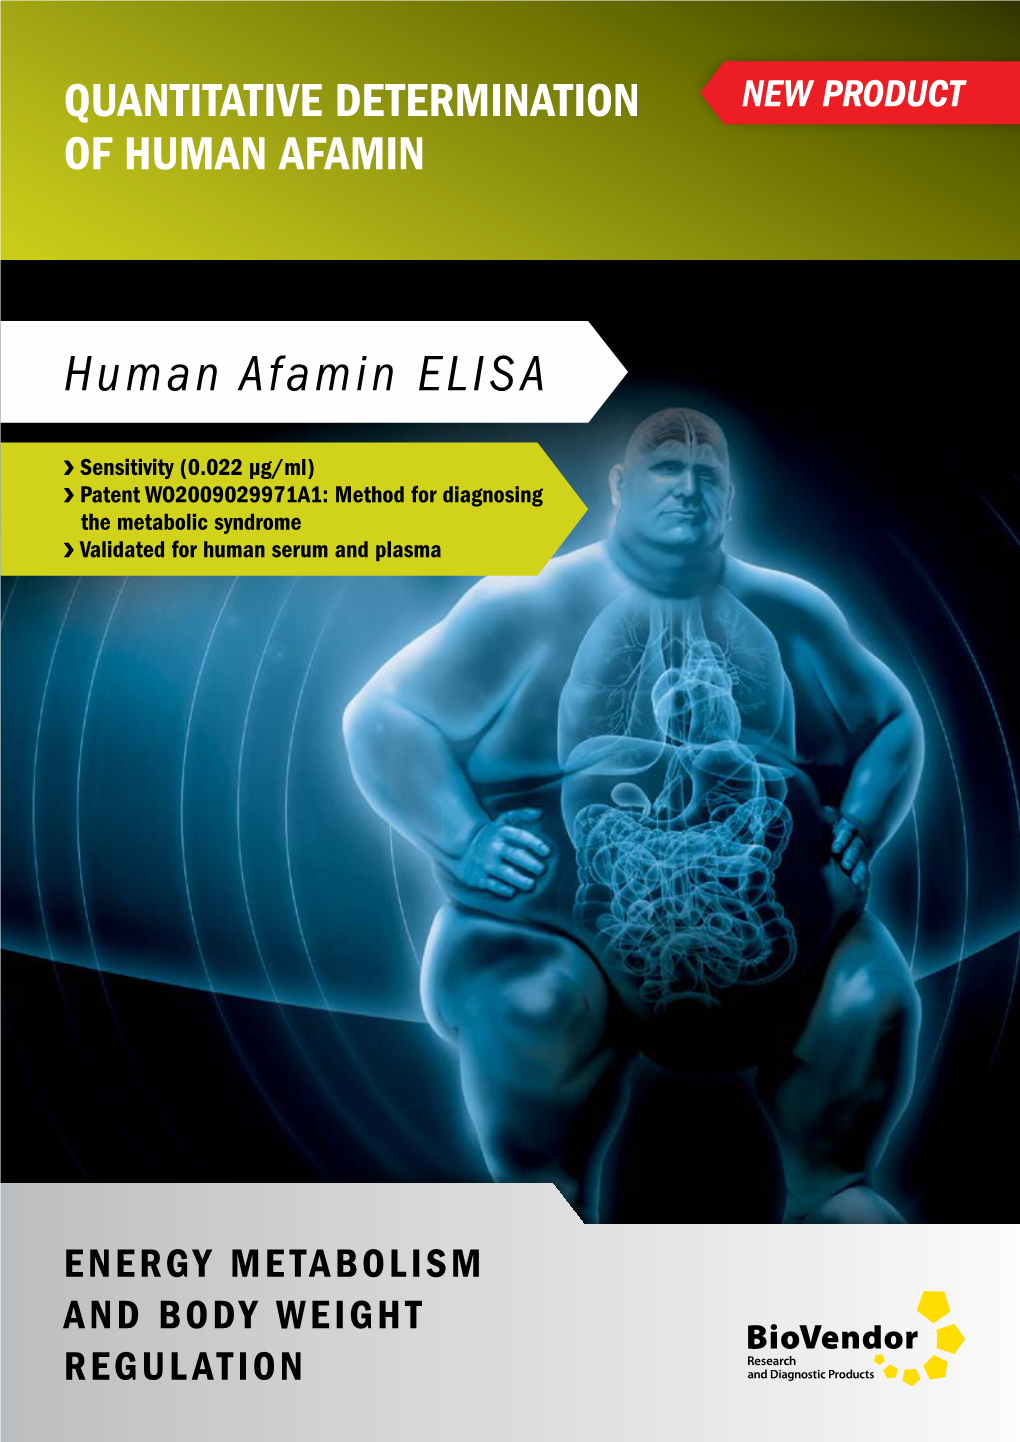 Human Afamin ELISA